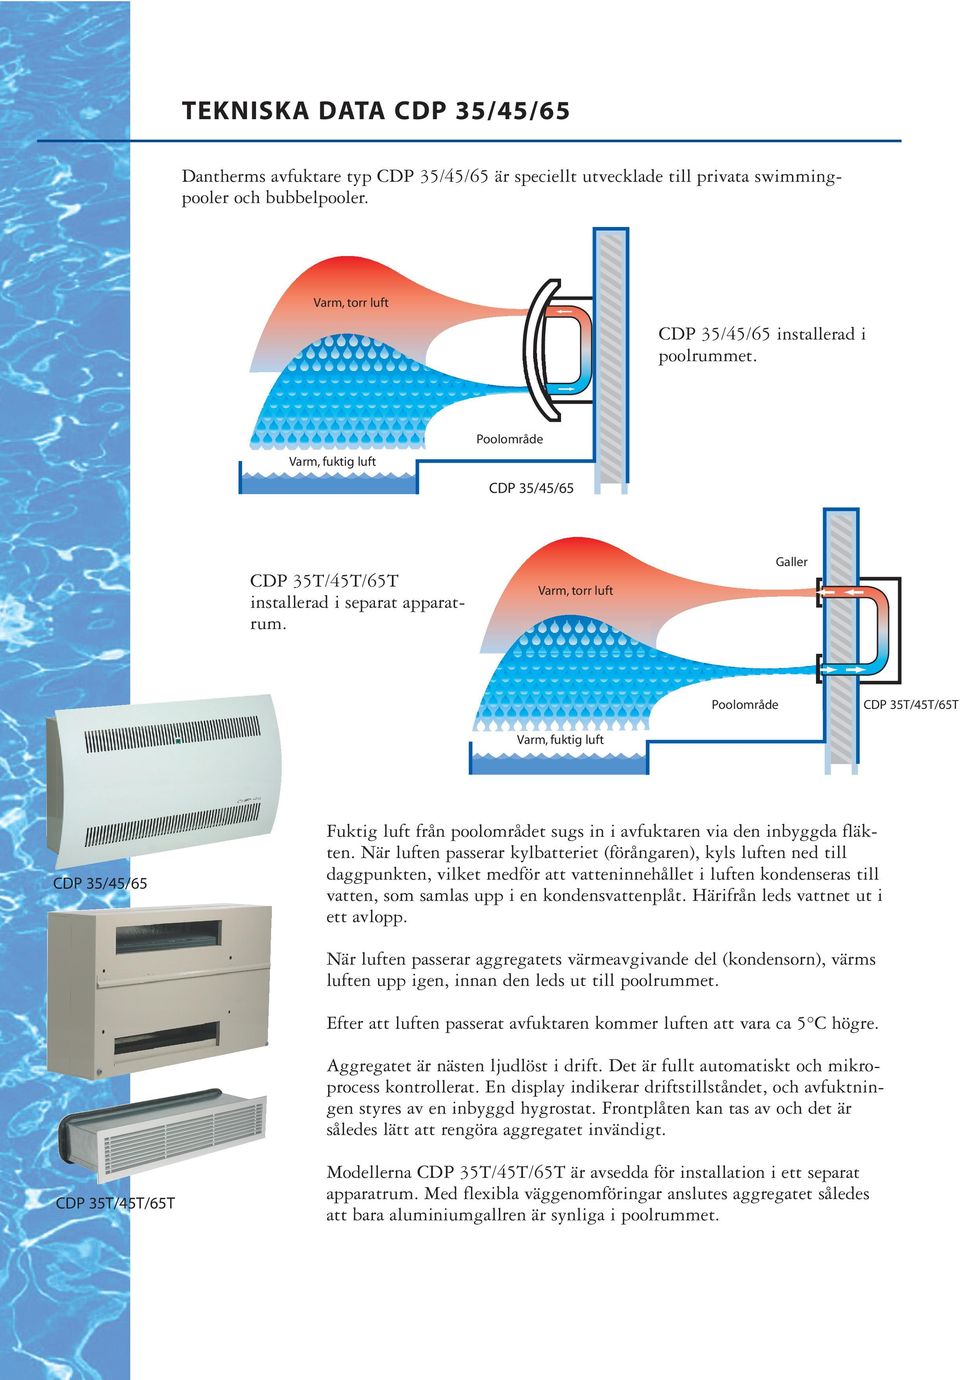 När luften passerar kylbatteriet (förångaren), kyls luften ned till daggpunkten, vilket medför att vatteninnehållet i luften kondenseras till vatten, som samlas upp i en kondensvattenplåt.